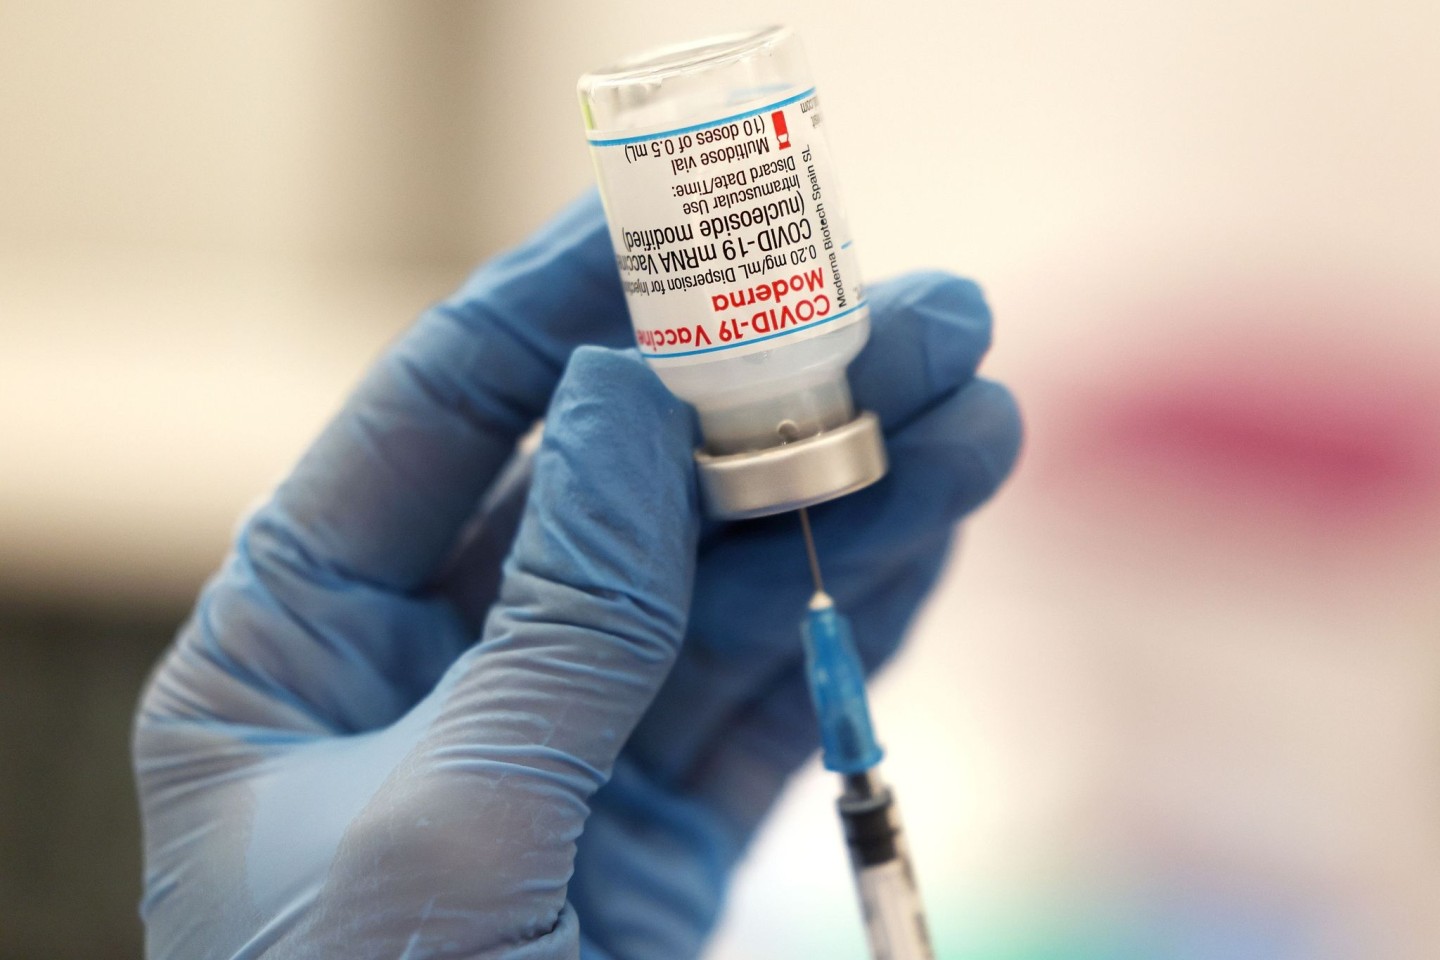 Eine zweifache Corona-Impfung mit dem Vakzin des US-Herstellers Moderna sorgt Labordaten zufolge für eine schwächere Abwehrreaktion des Körpers gegen die neue Omikron-Variante.